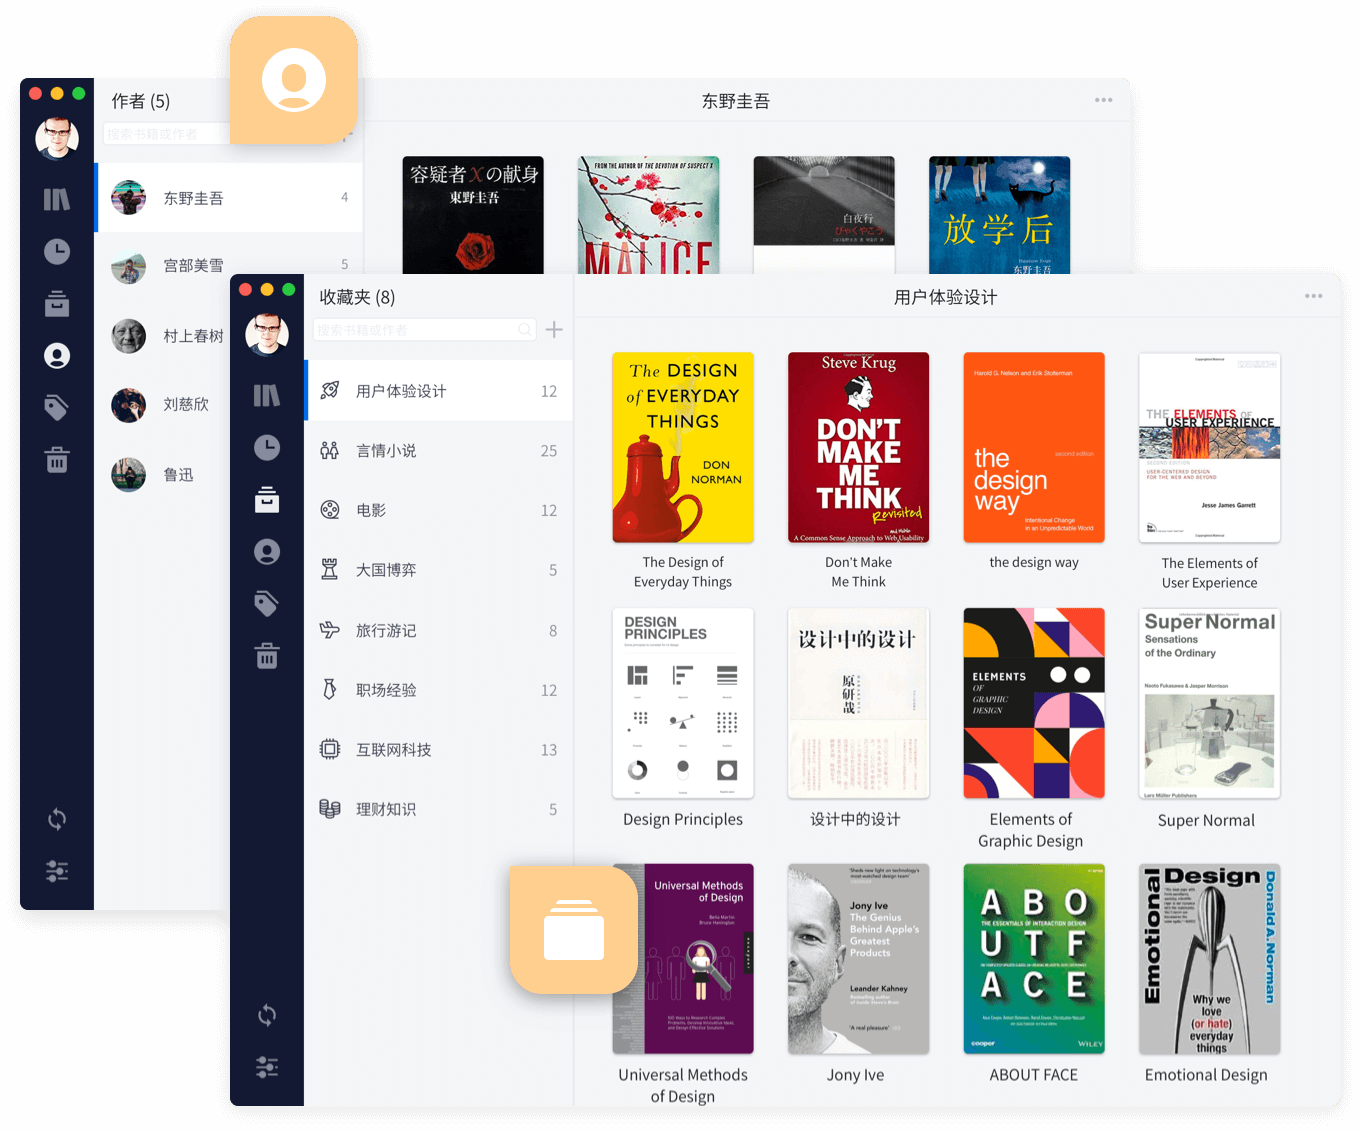 全新升级的Knotes2.0，帮你把微信读书和Kindle笔记放一起